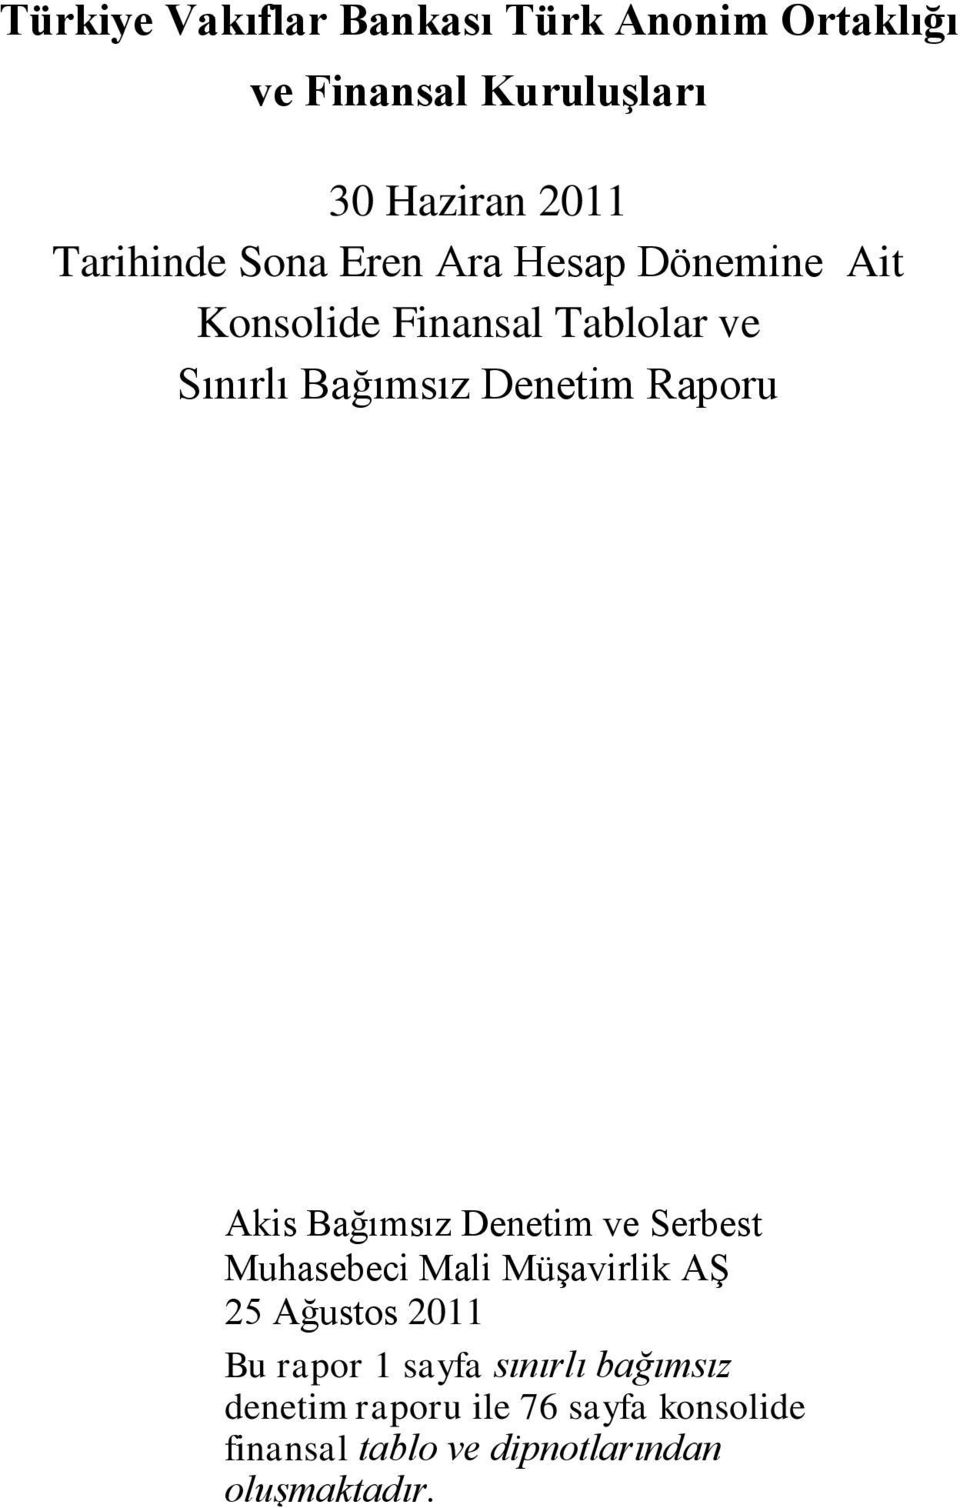 Akis Bağımsız Denetim ve Serbest Muhasebeci Mali Müşavirlik AŞ 25 Ağustos 2011 Bu rapor 1 sayfa